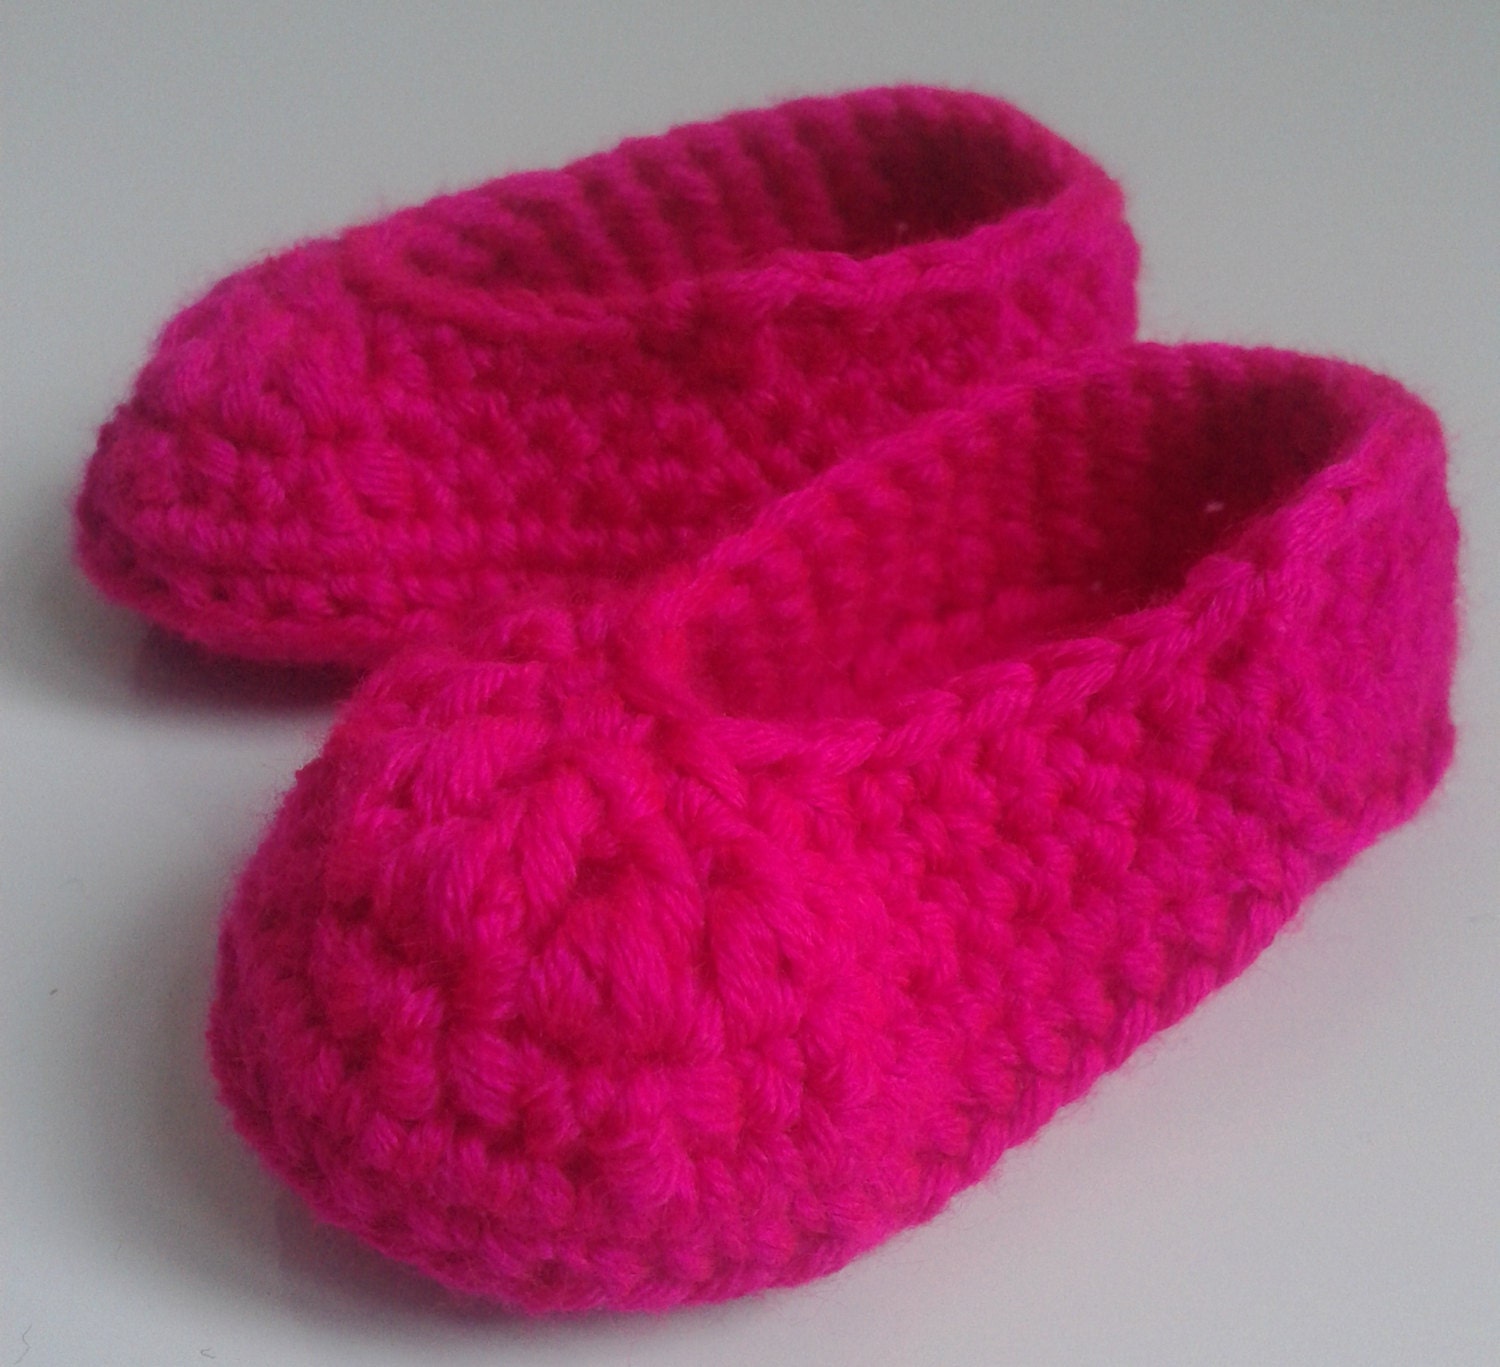 Newborn Baby Girls Crochet Slippers / Booties in Pink baby